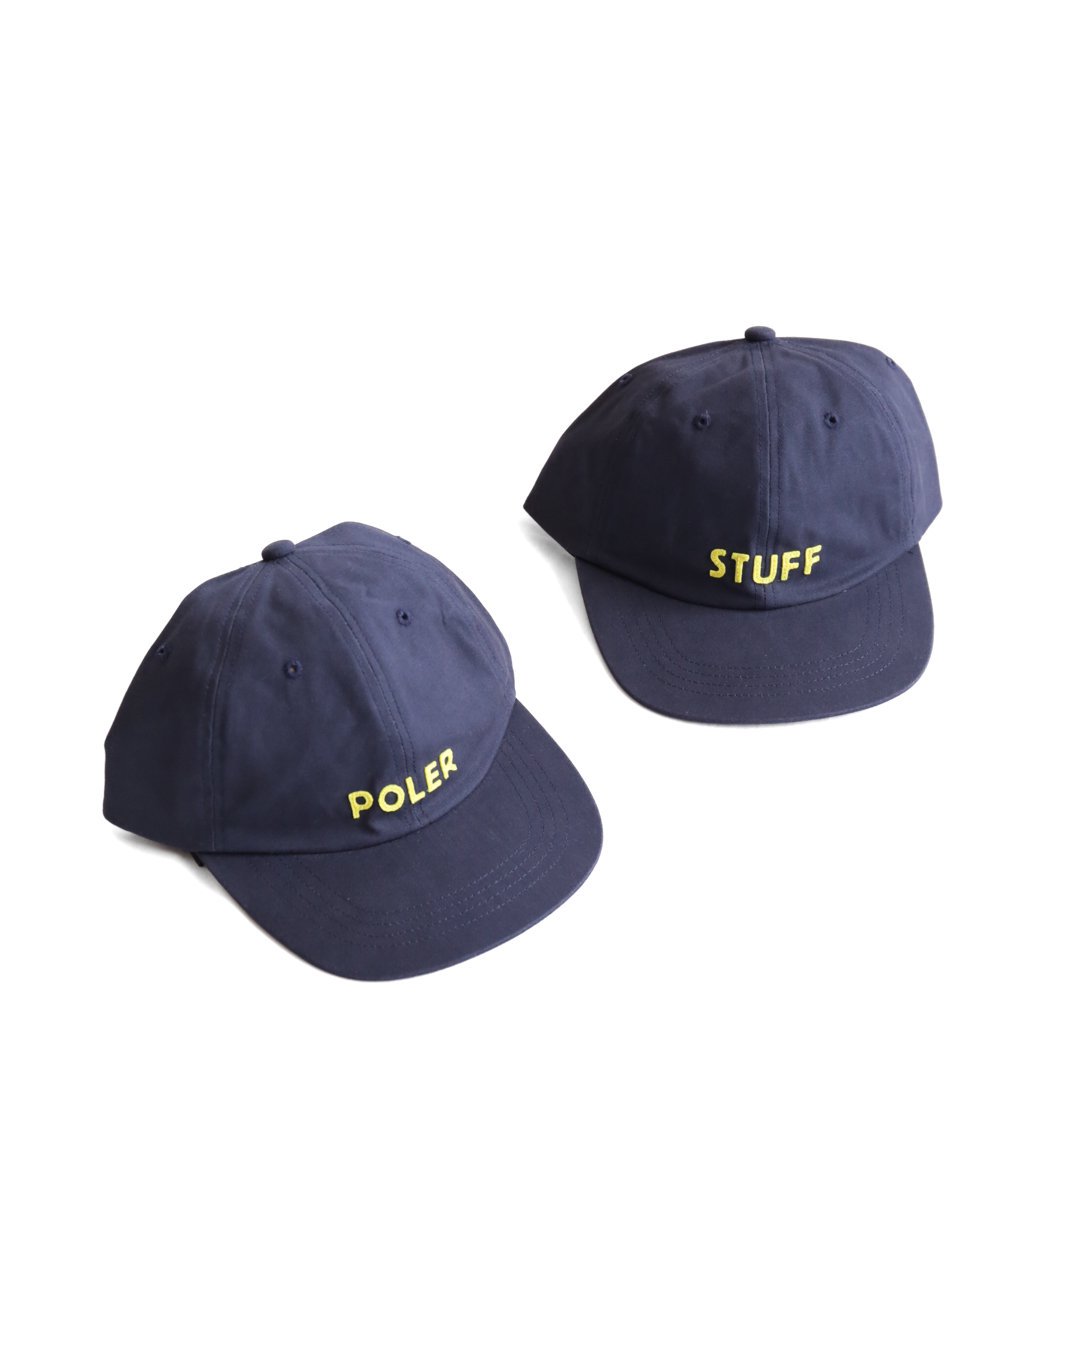 POLER STUFF CAP